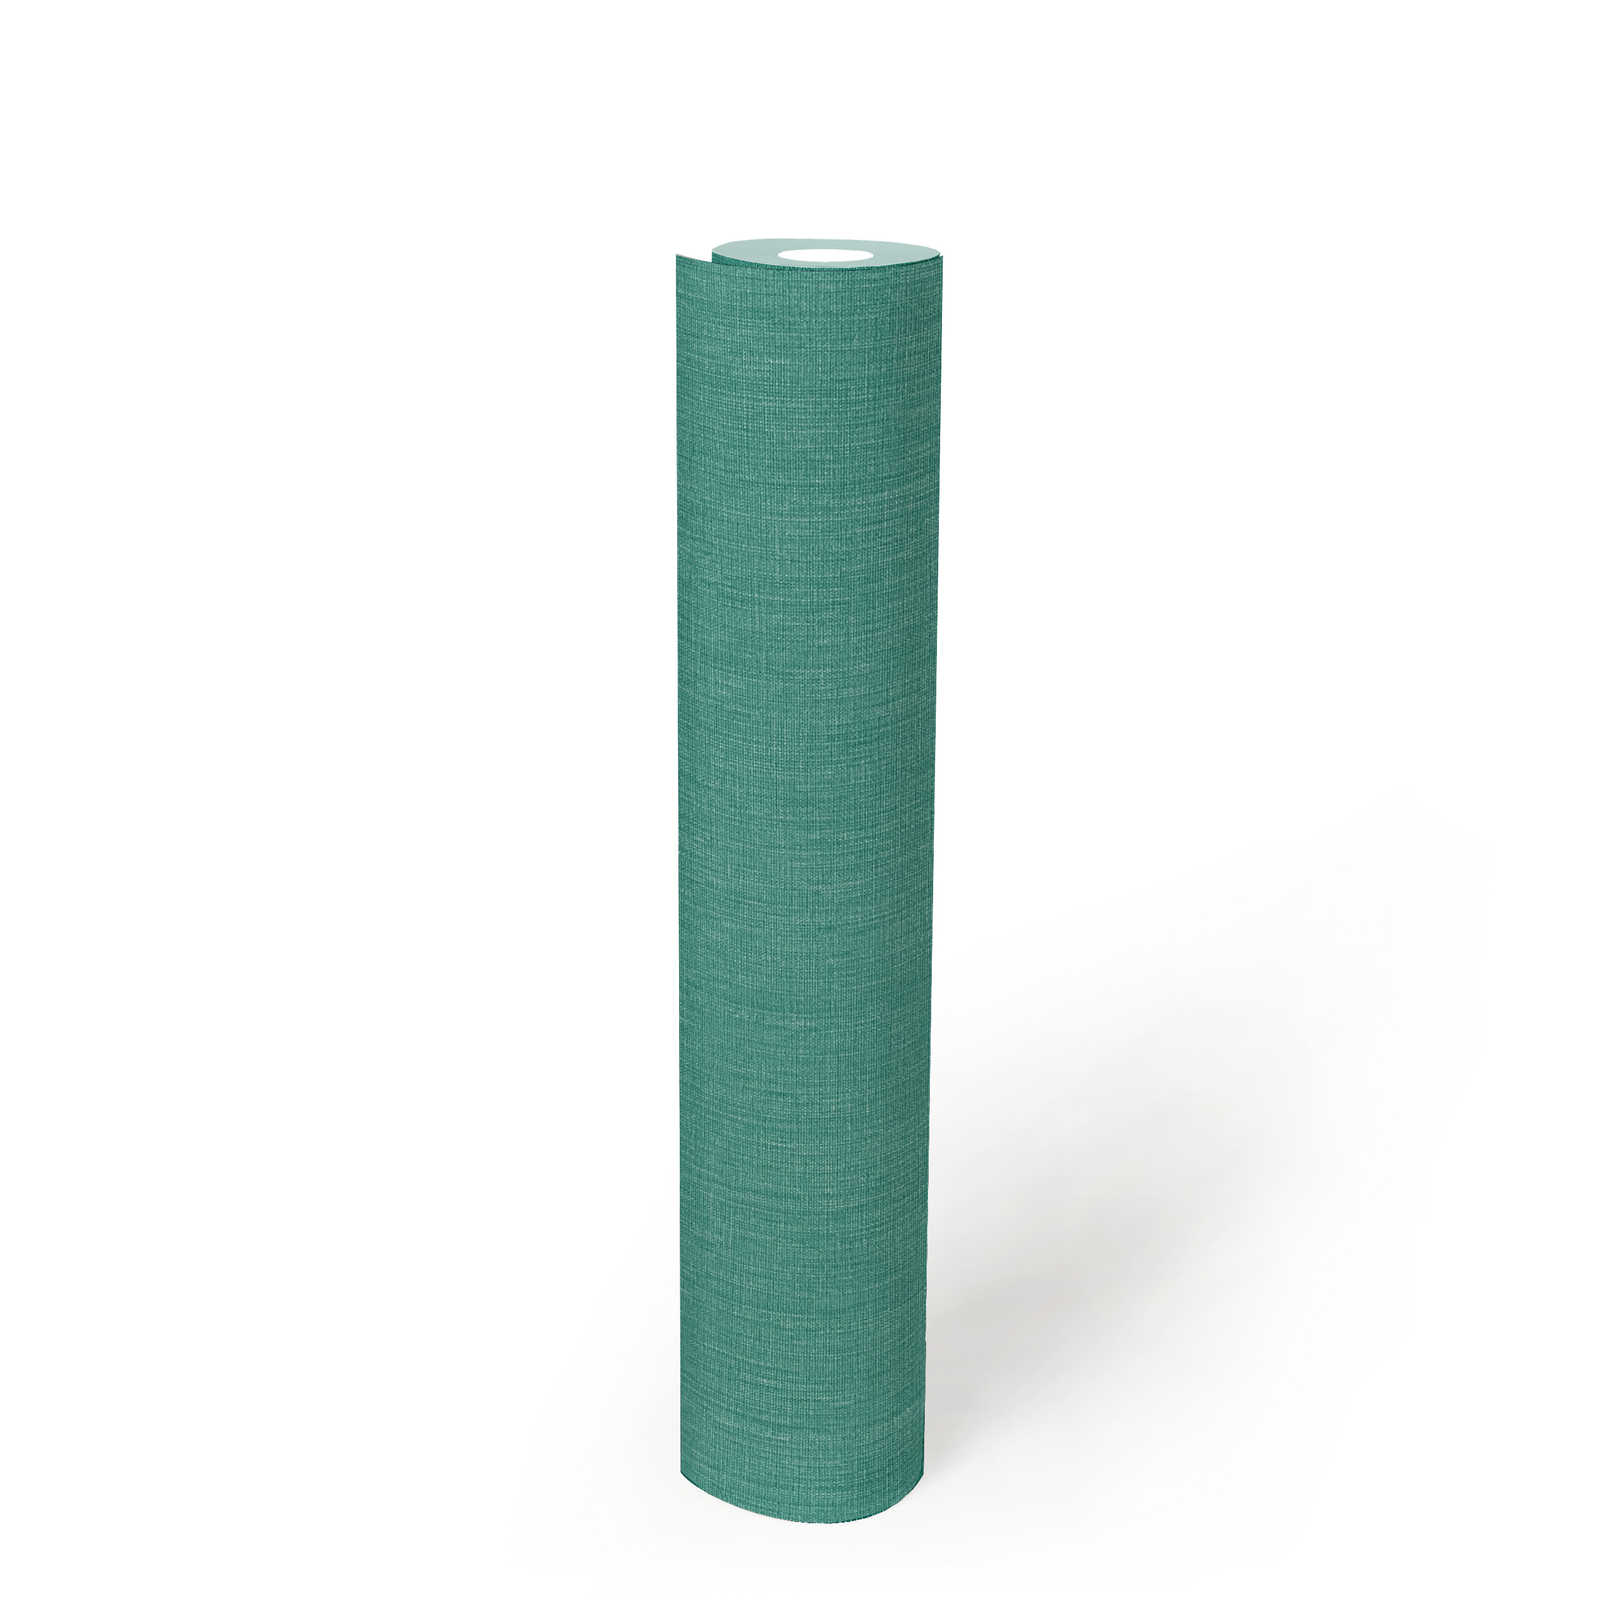             Carta da parati unitaria con texture su tessuto non tessuto in aspetto opaco - verde, blu
        